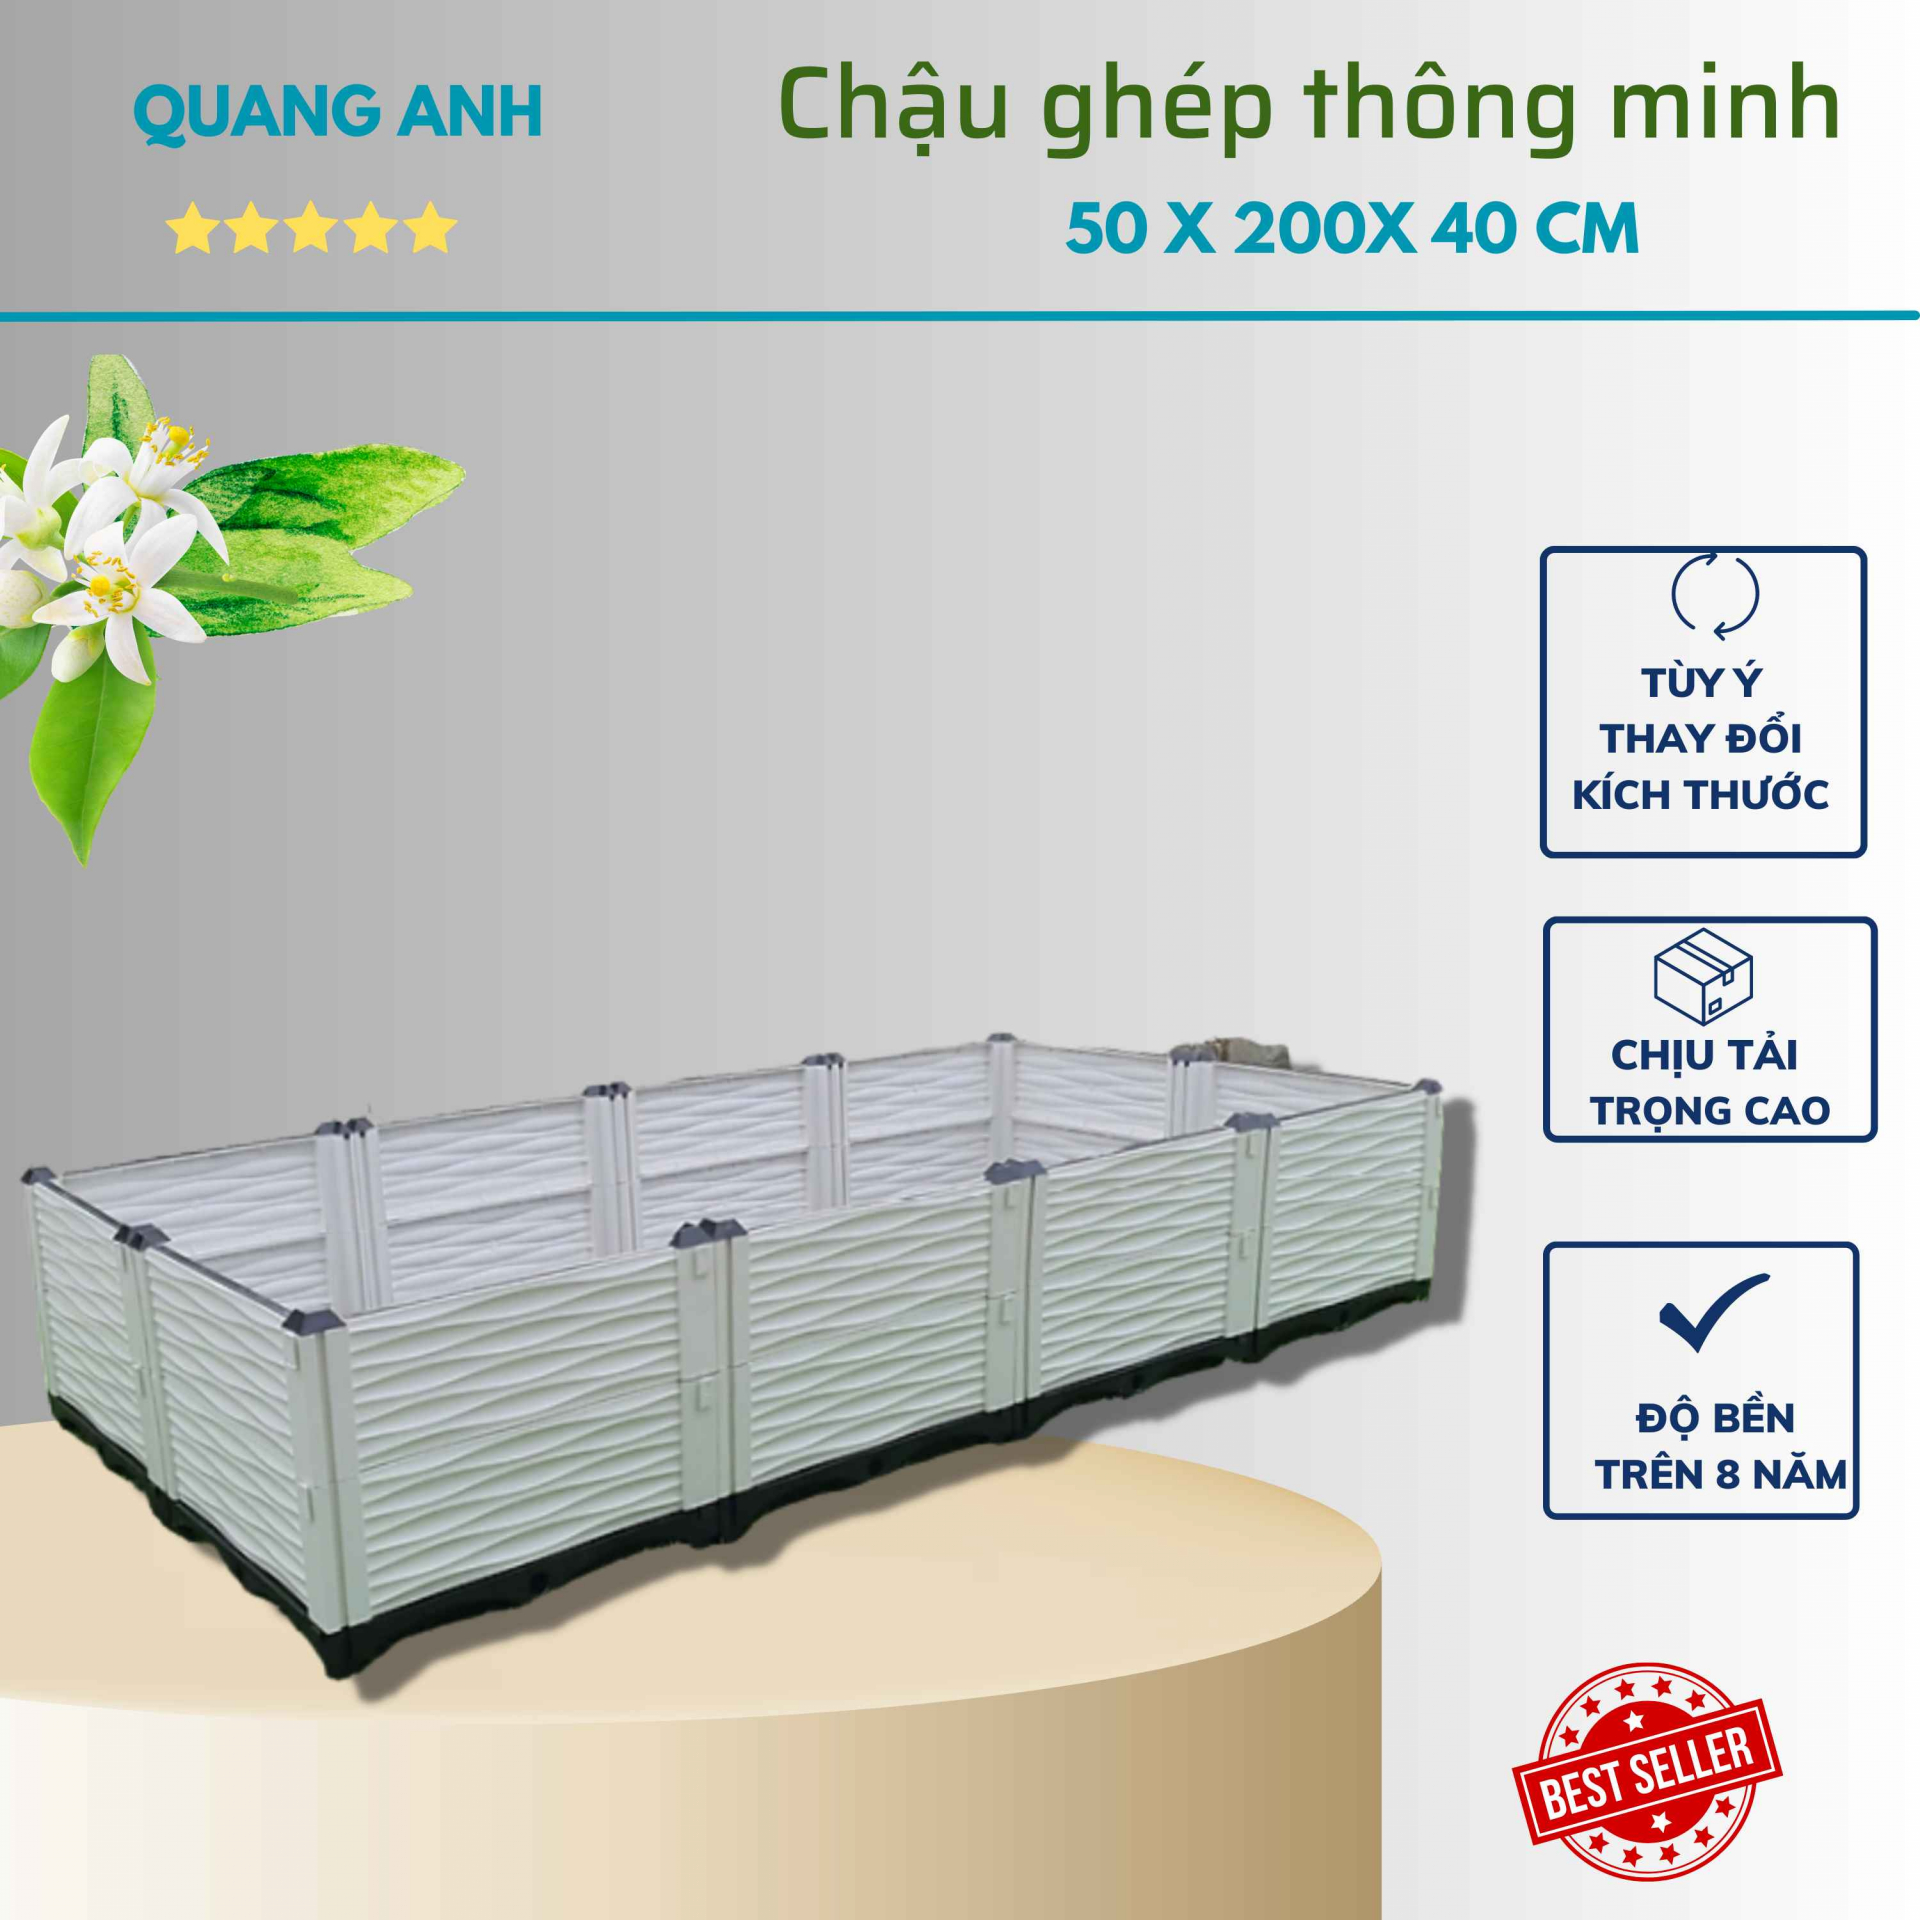 Luống ghép trồng rau sạch thông minh Quang Anh KT 50x200x40cm